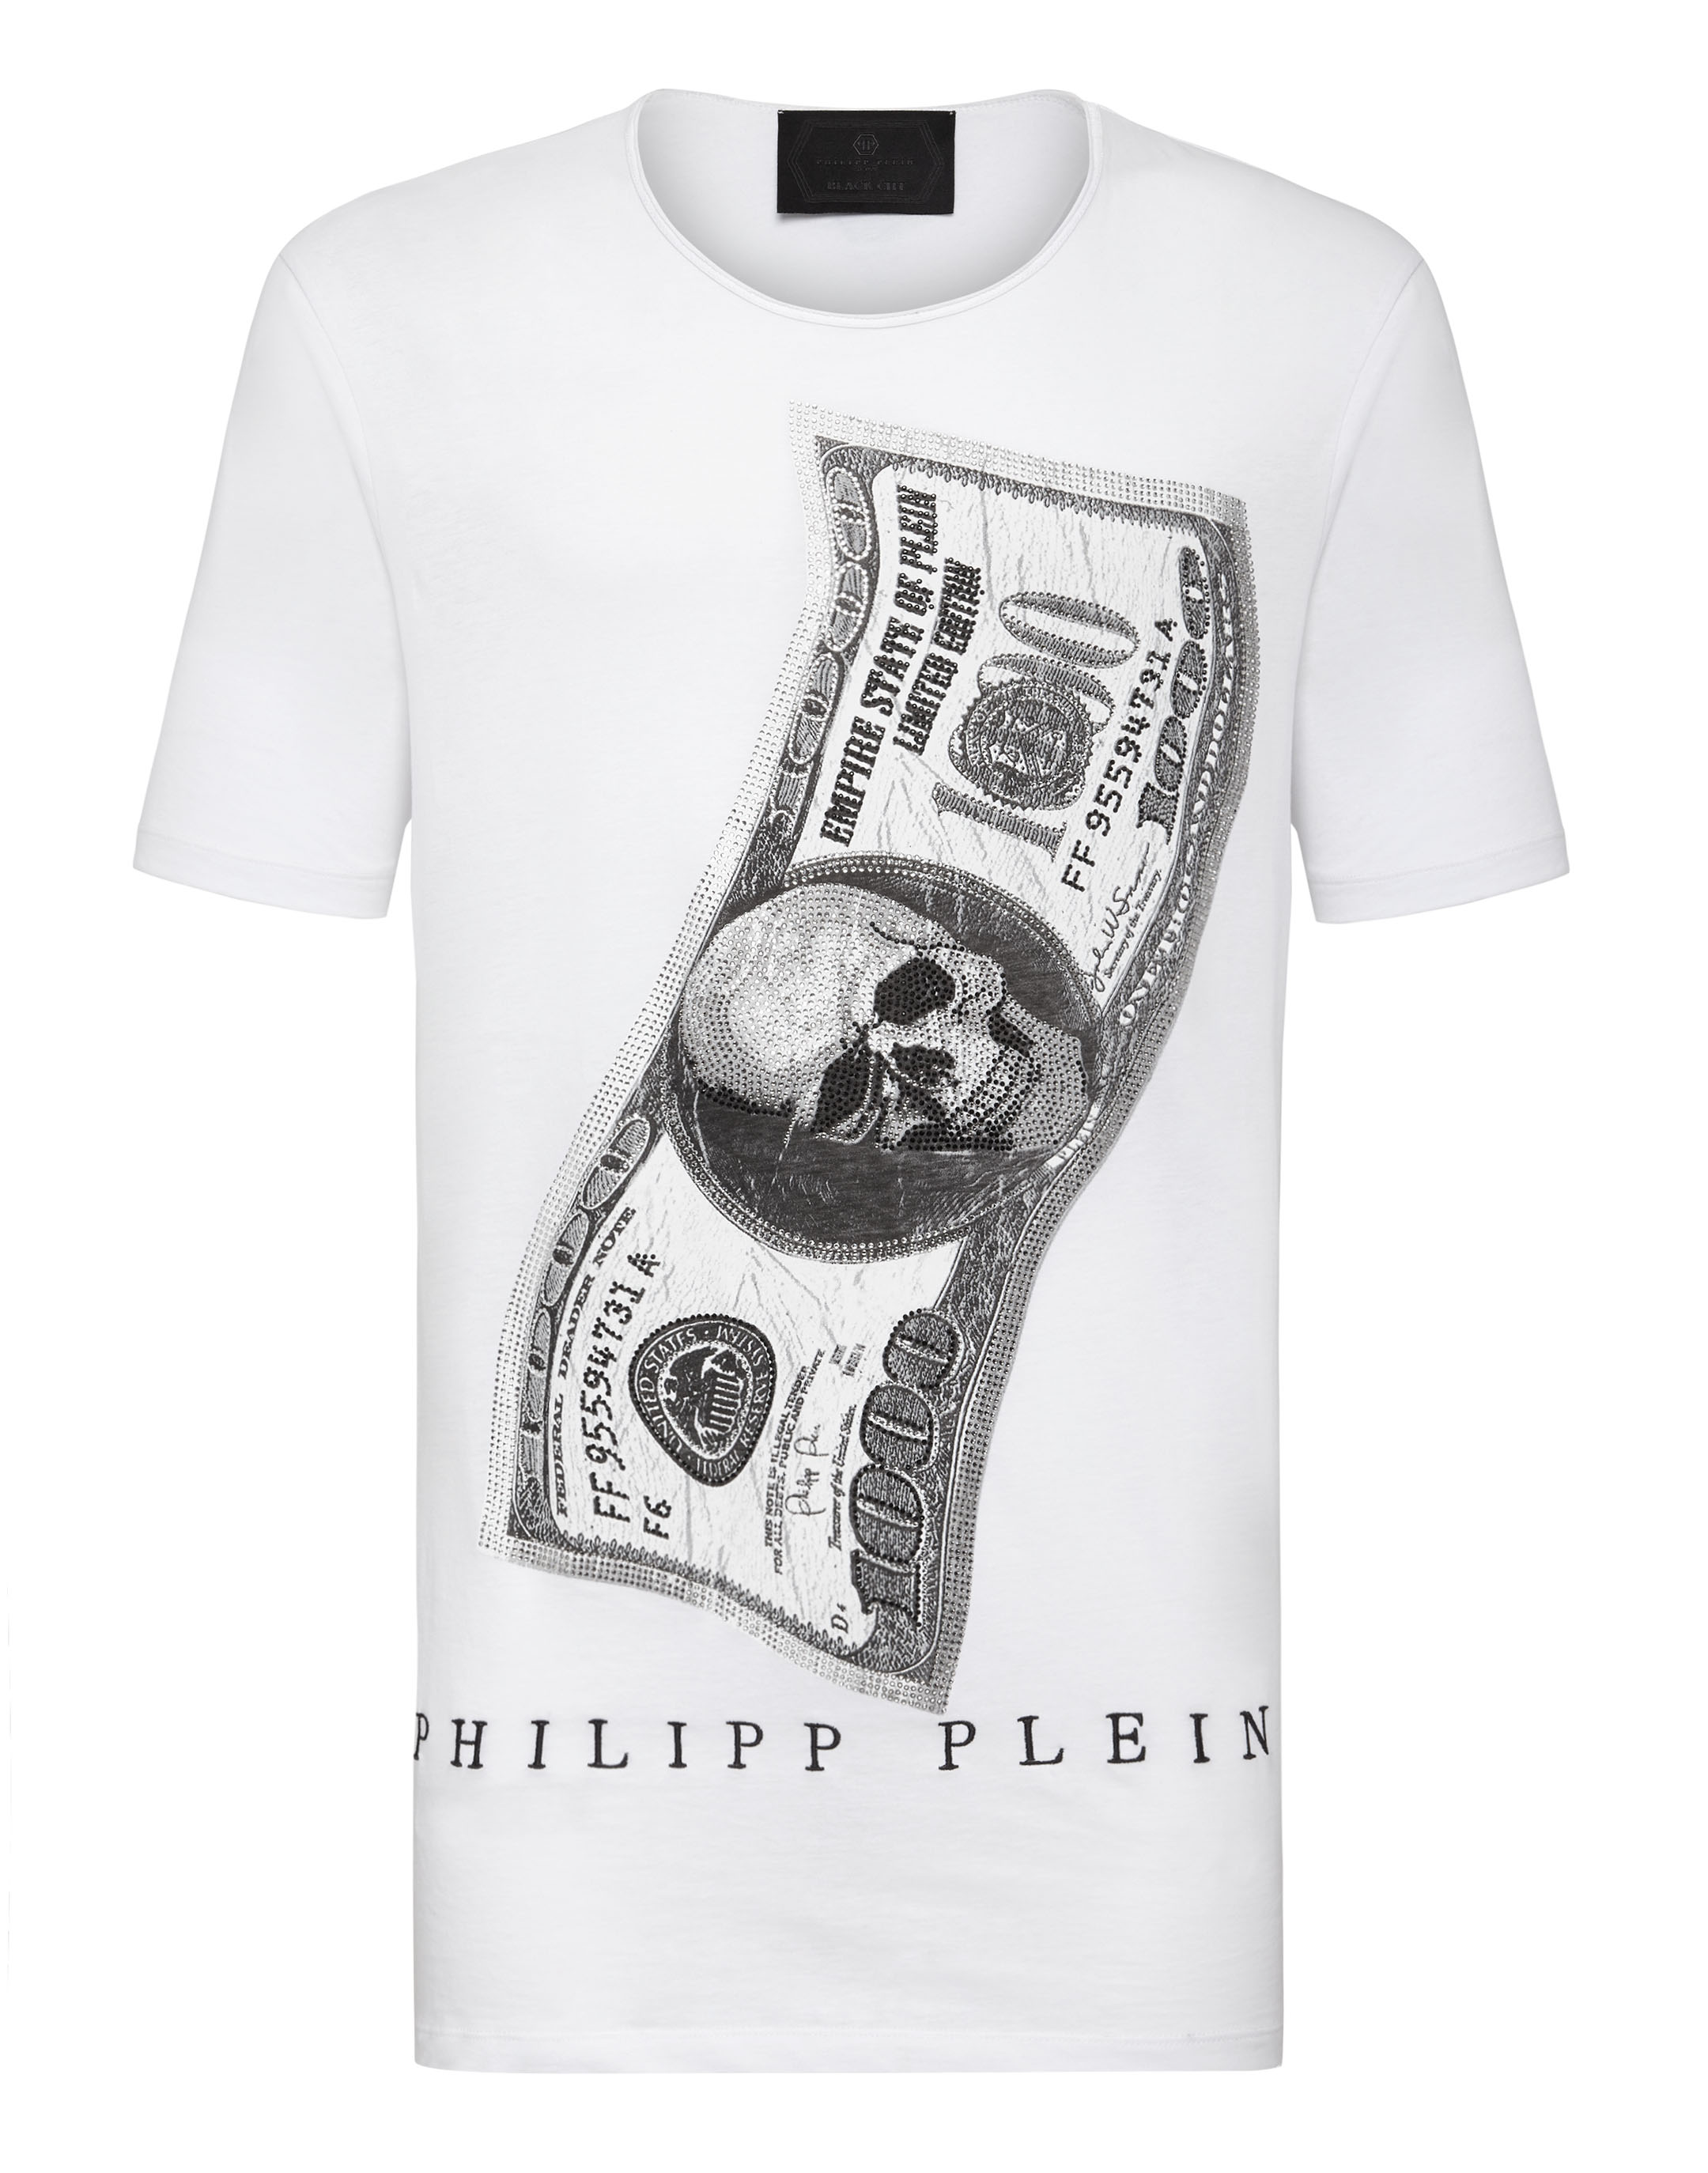 philipp plein t shirt dollar